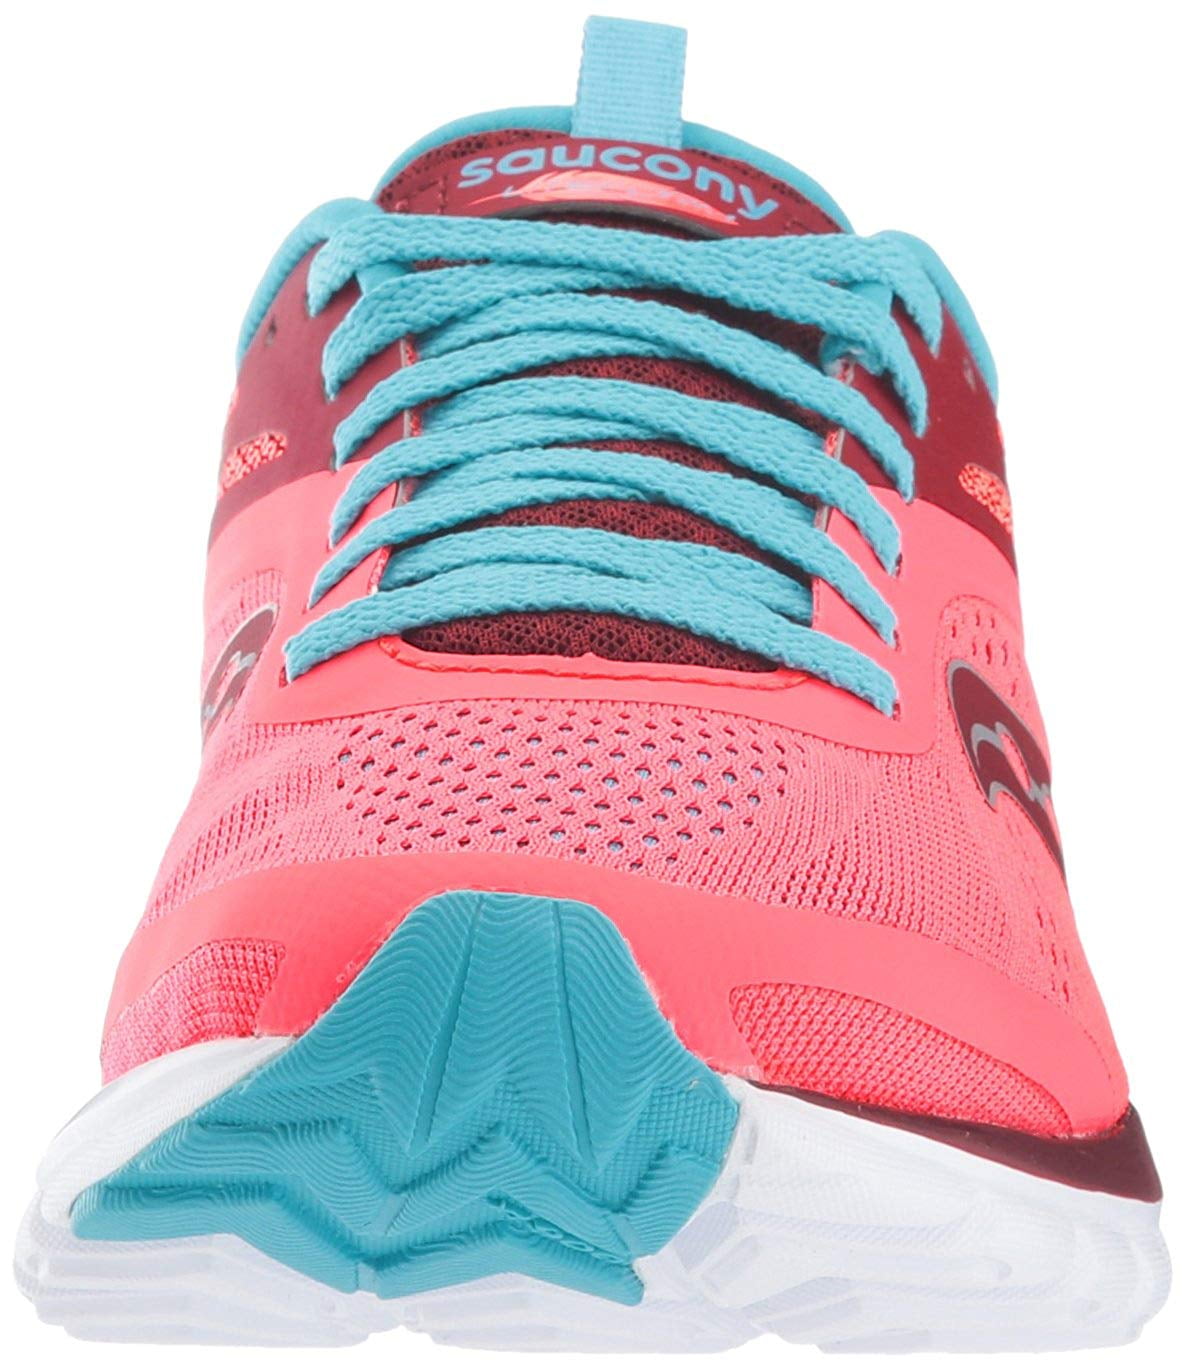 saucony women's liteform miles running shoes